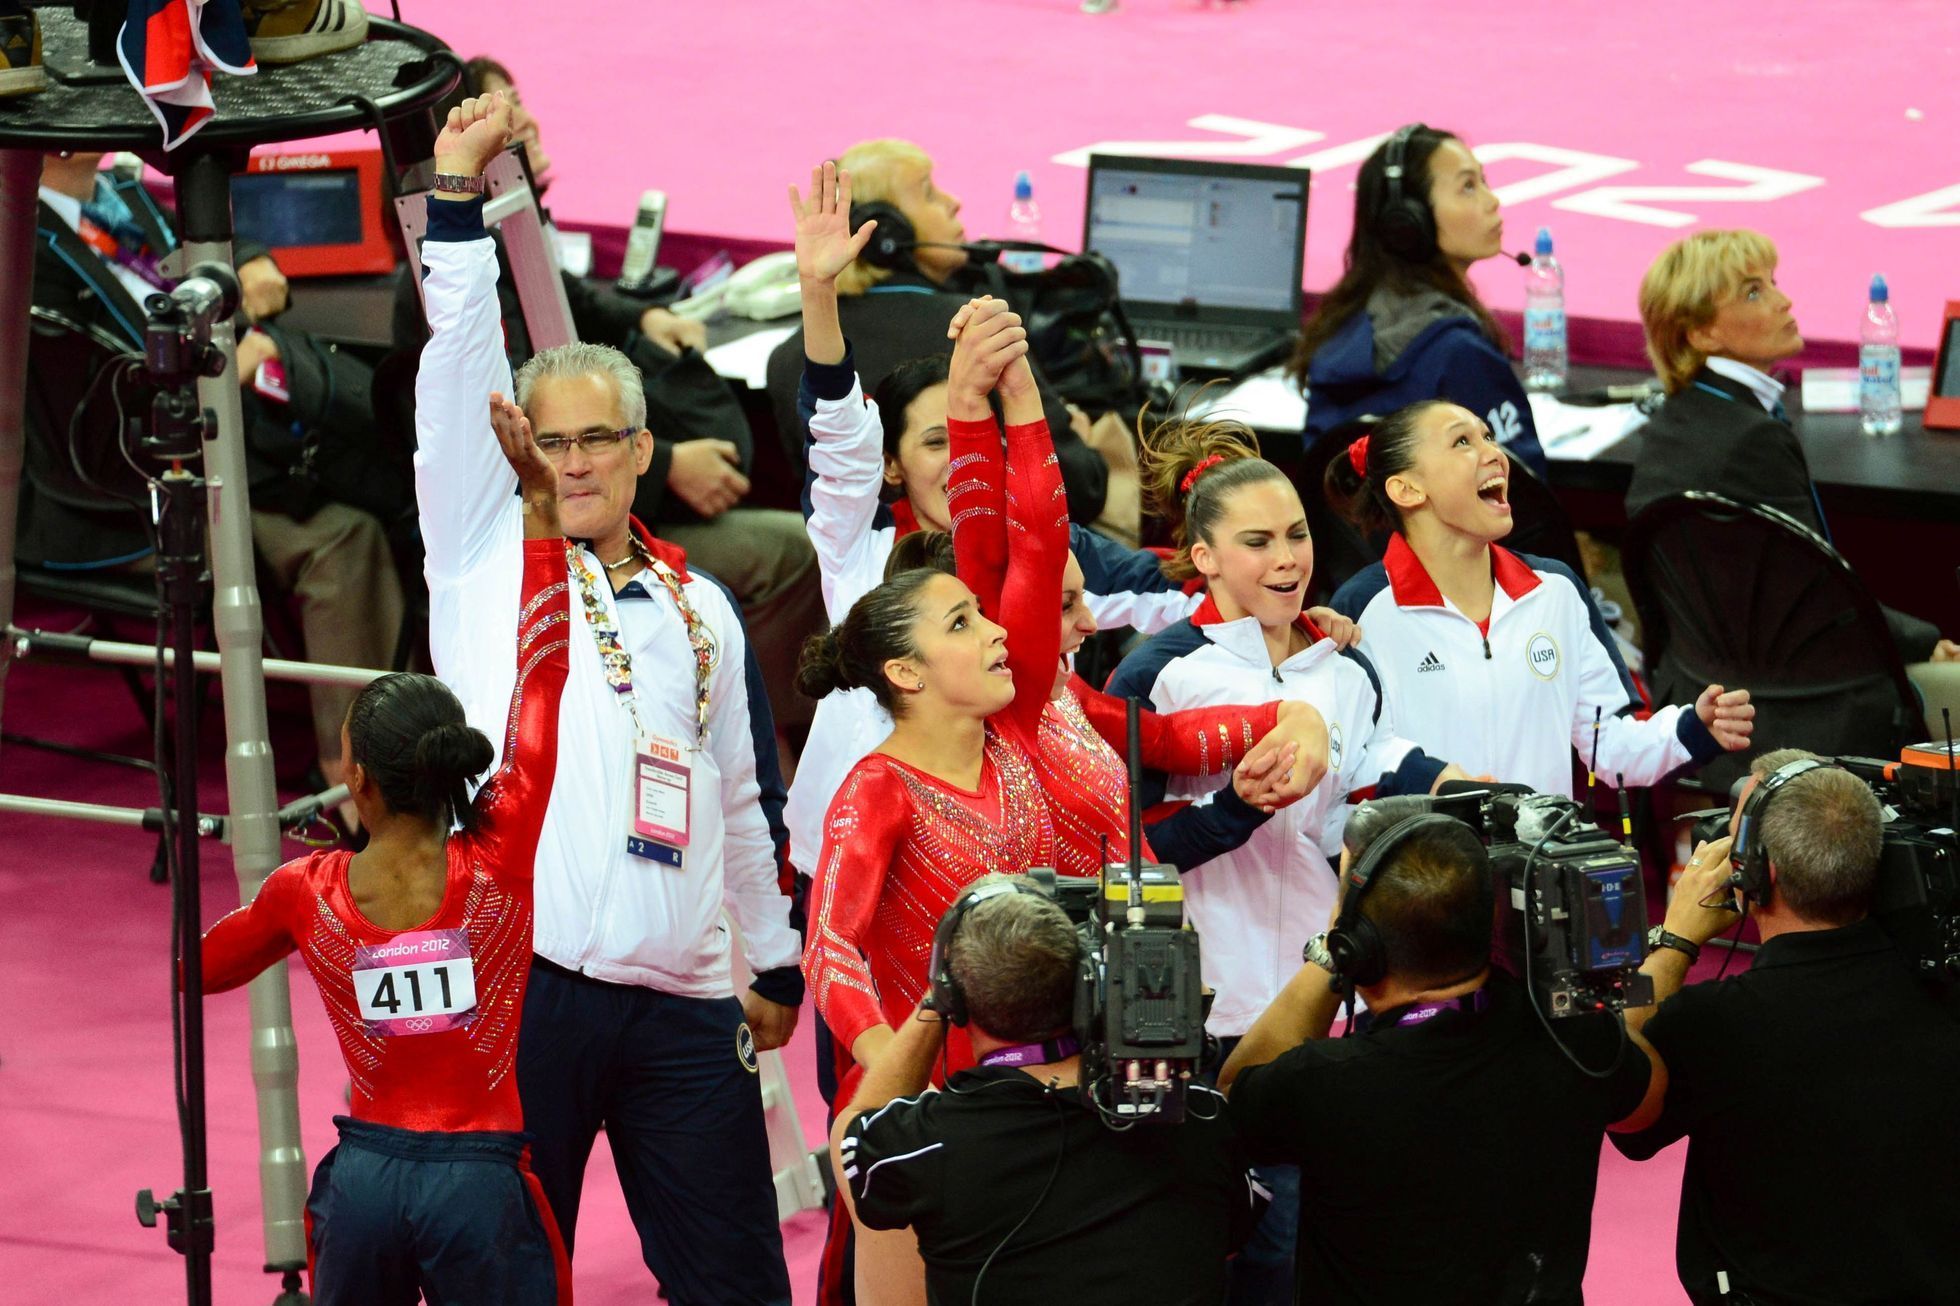 gymnastika, OH 2012, trenér John Geddert s vítězným týmem žen USA